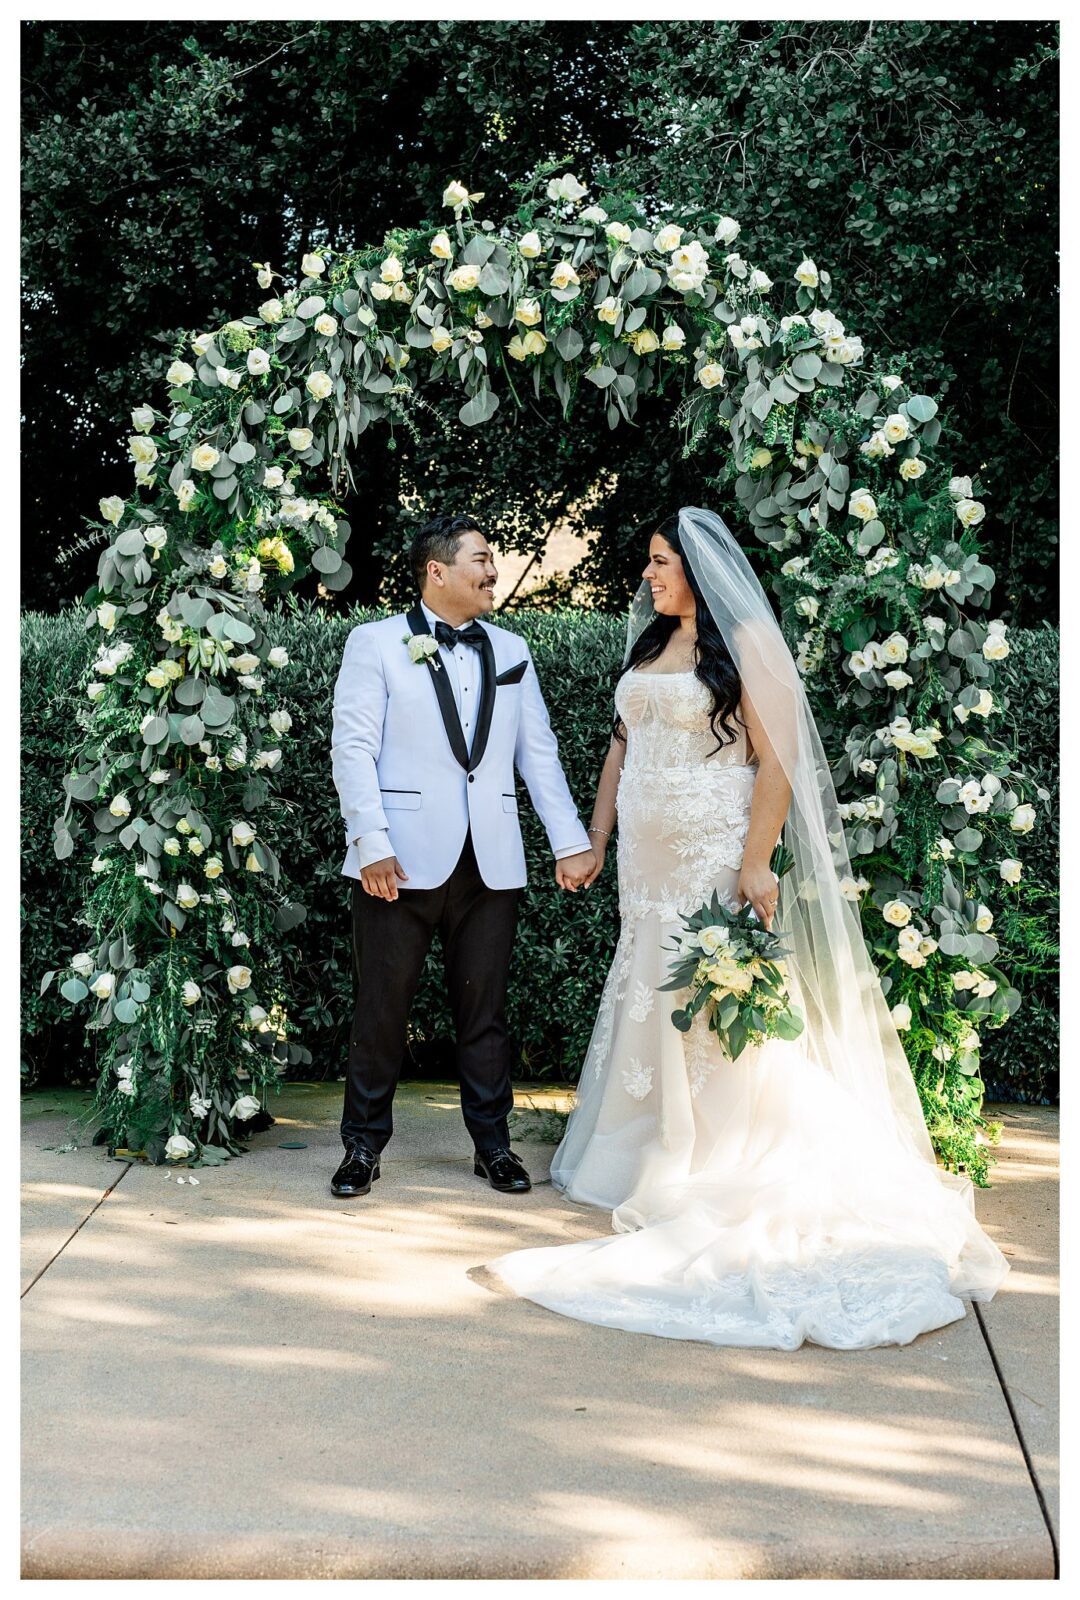 Luxury wedding at Maravilla gardens, a wedding venue in Santa Barbara, camarillo.